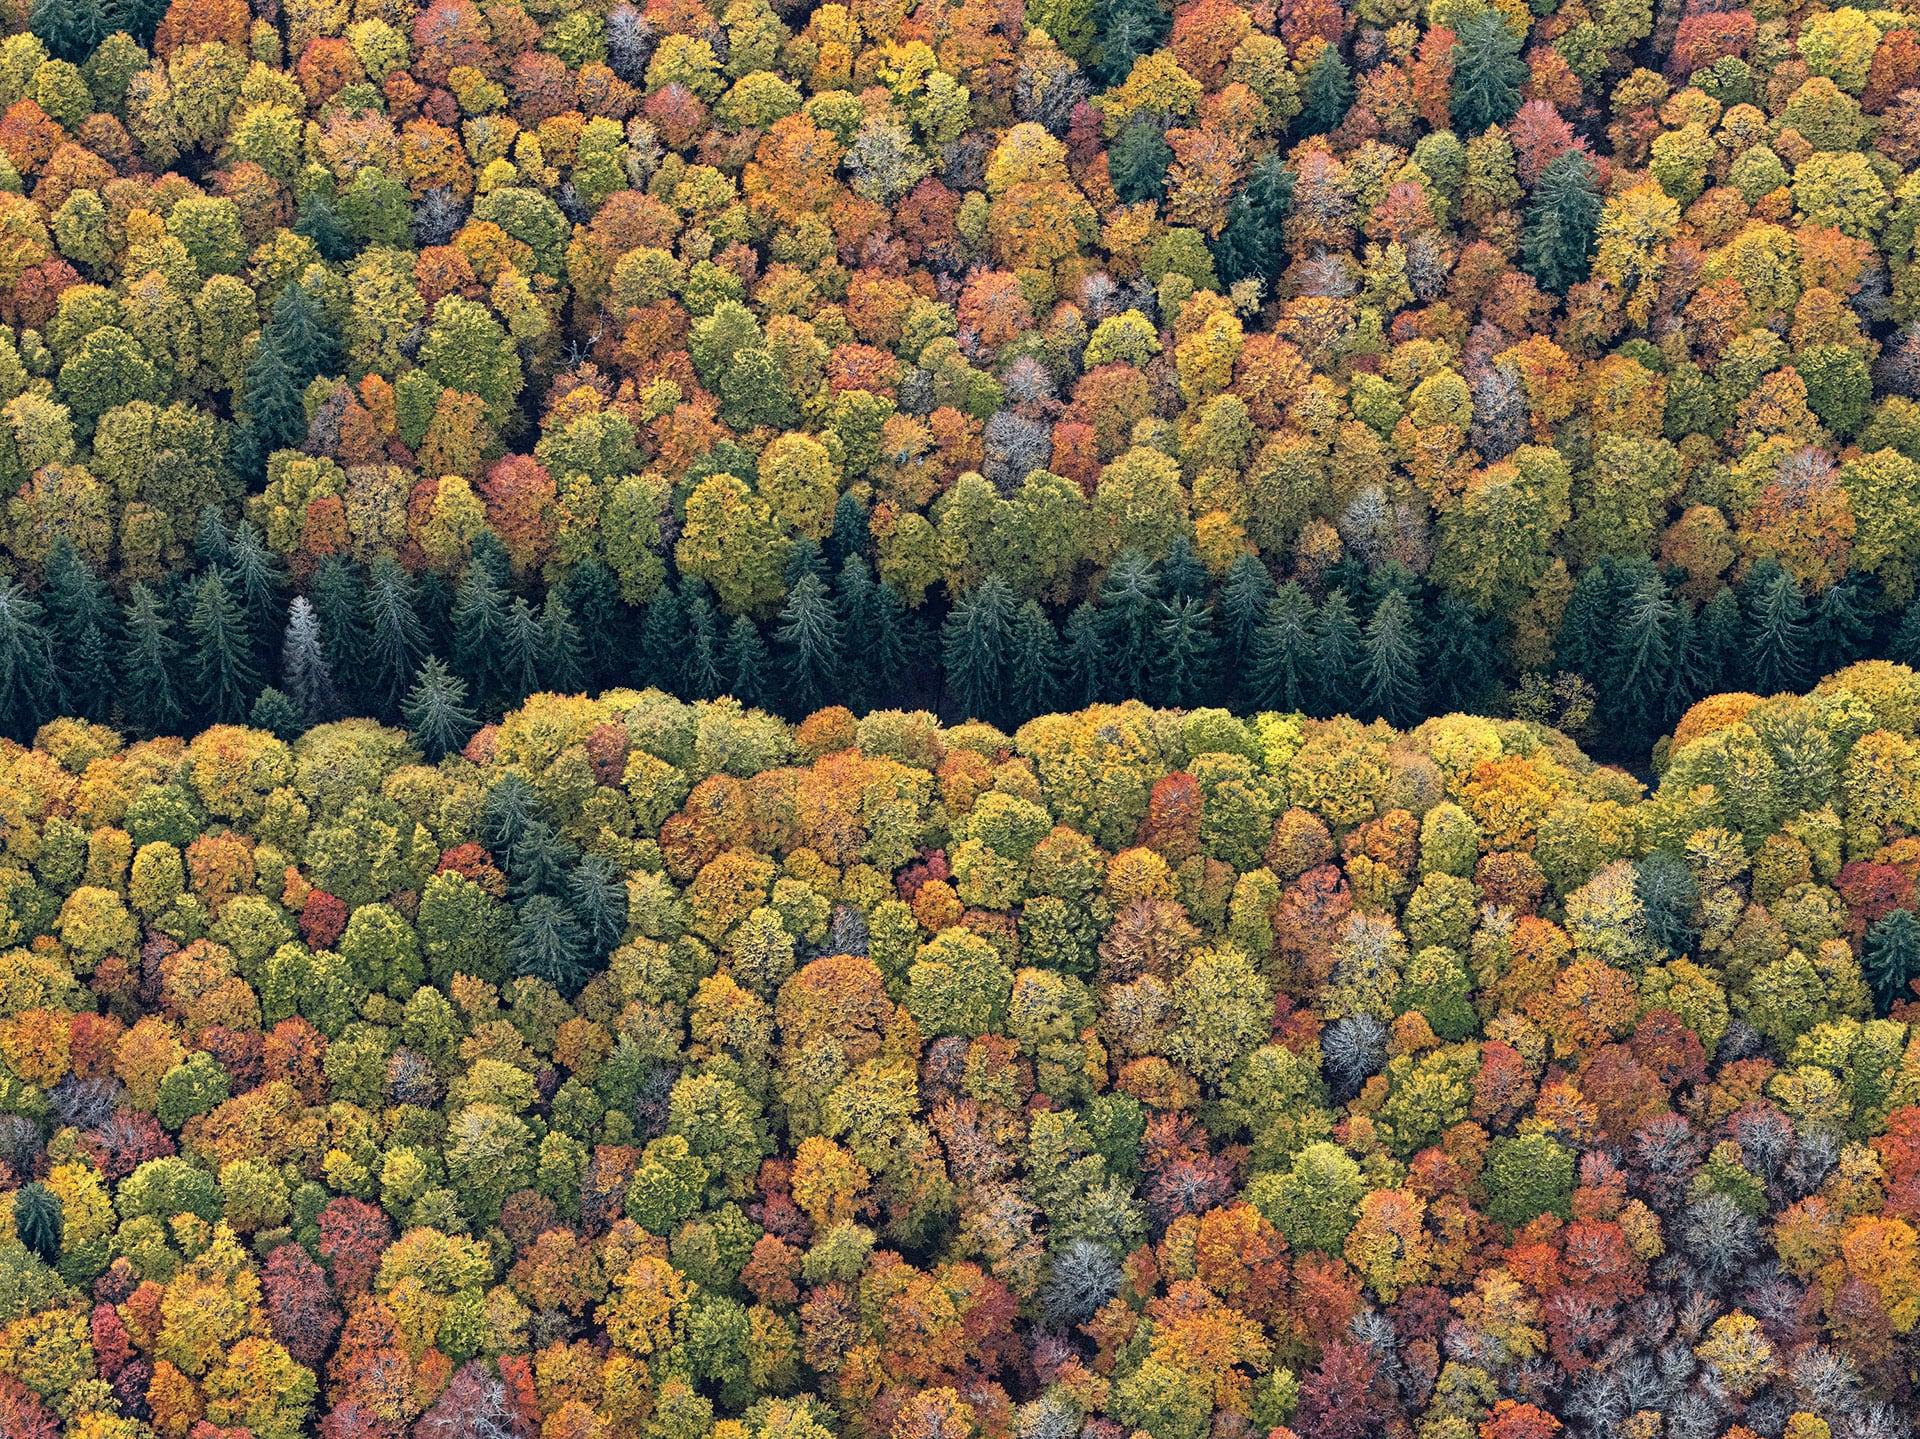 Dense Autumn Trees Blanket A Mountainous Bavarian Forest In